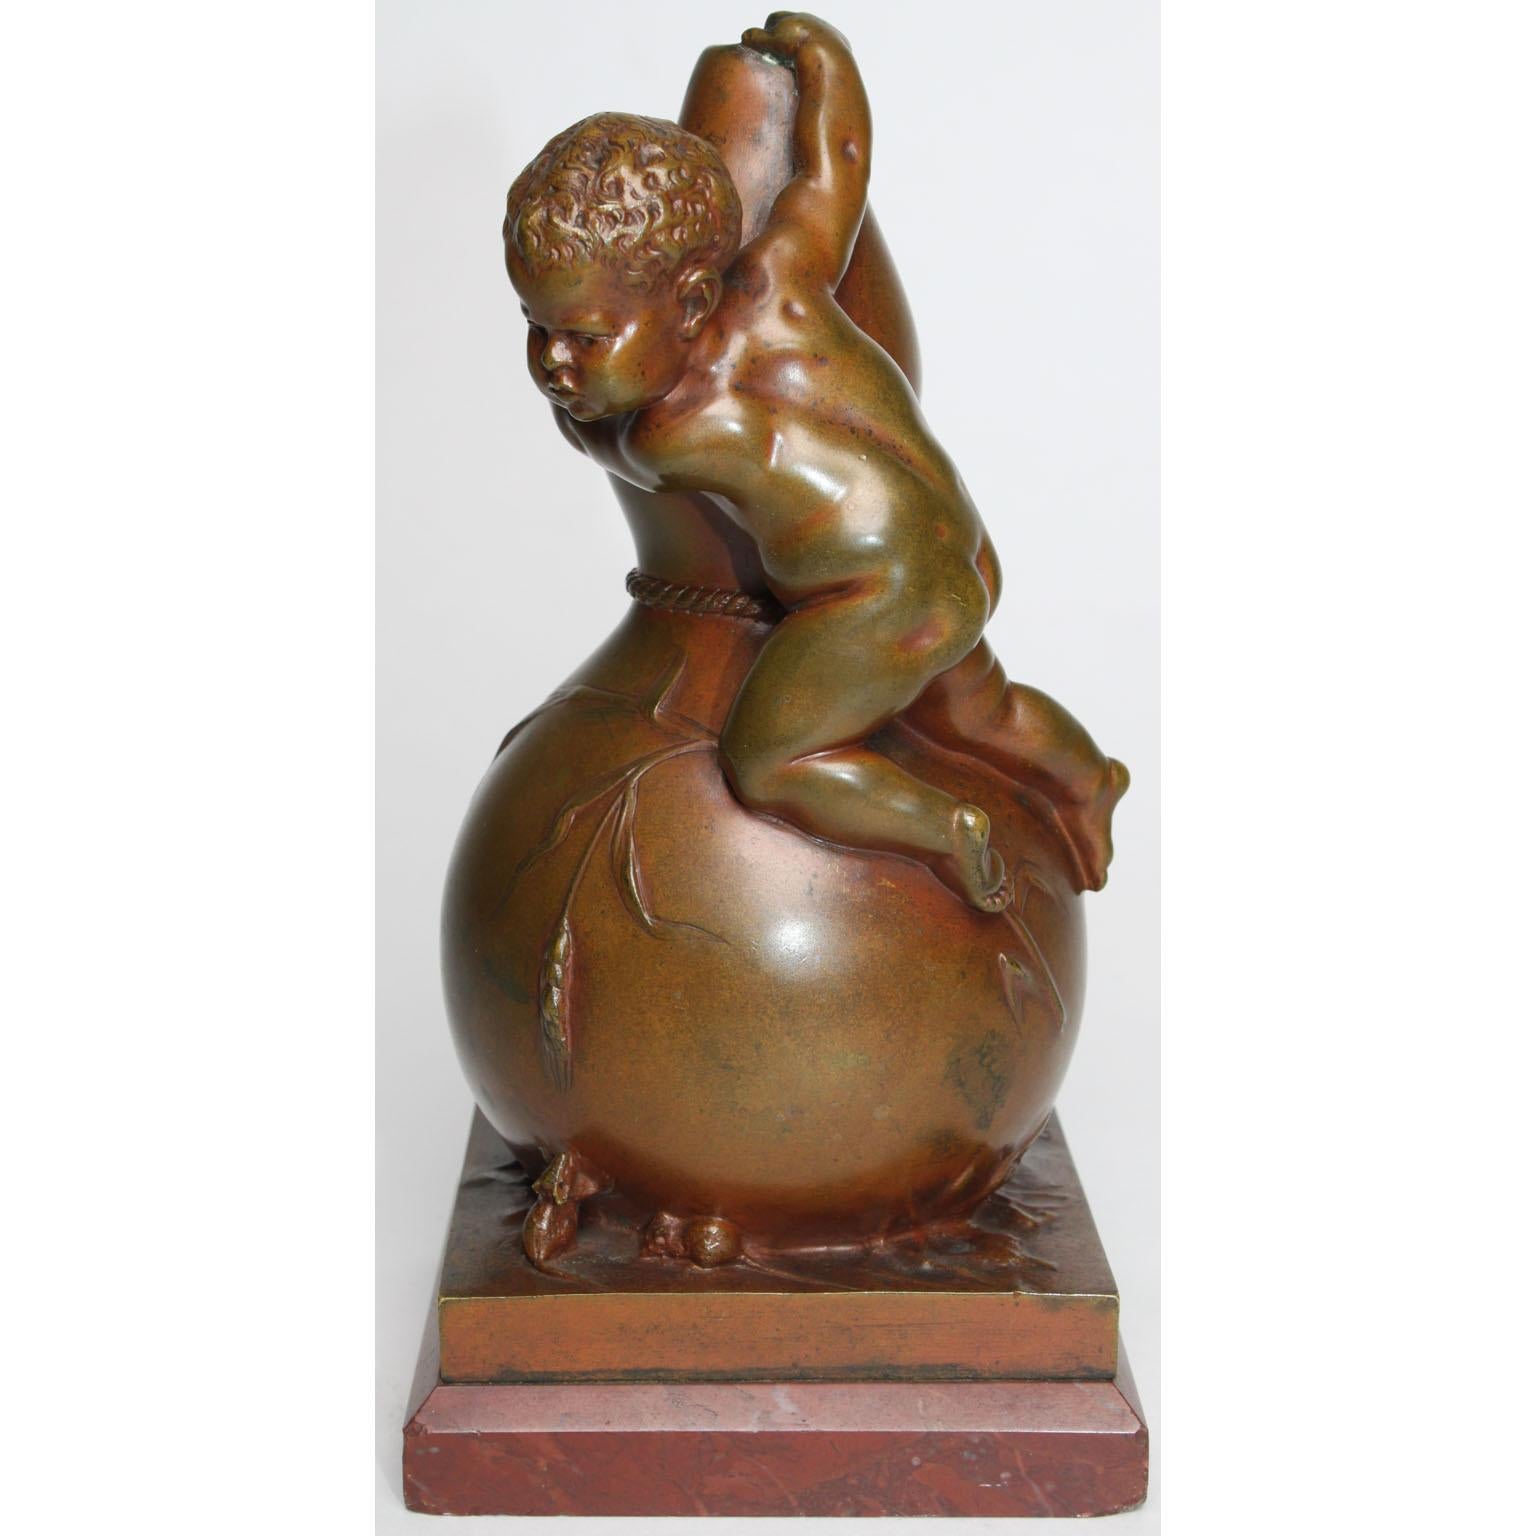 Louis Kley (Français, 1833-1911) Beau et charmant groupe en bronze patiné représentant un jeune garçon grimpant sur un vase et craignant deux souris. Le groupe en bronze finement exécuté représente un enfant nu au sommet d'un vase en forme de